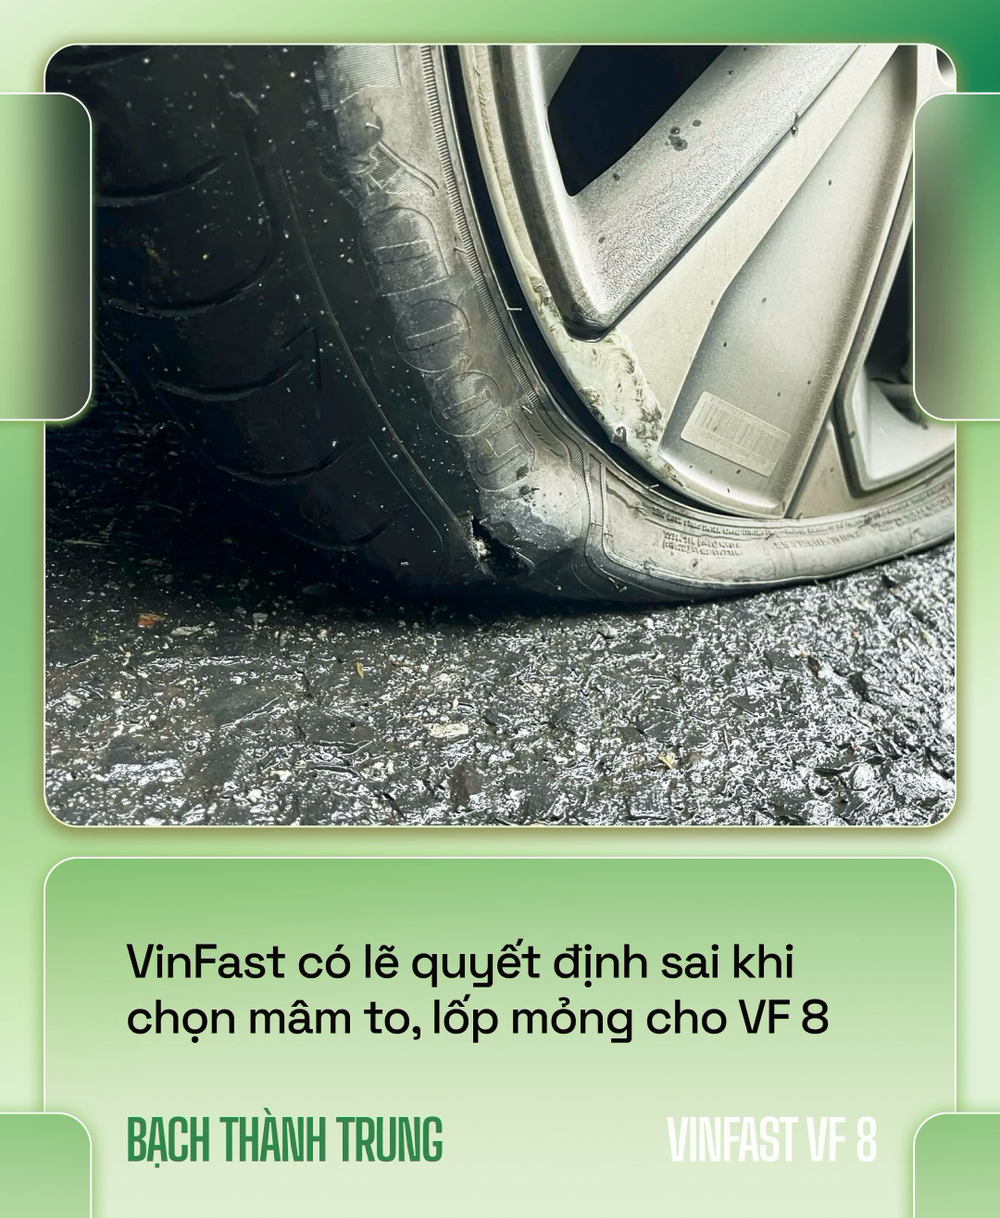 Nhà sáng lập VOZ lái VinFast VF 8 xuyên Việt hơn 6.600km: Đổ đèo nhàn hơn xe xăng, nhưng vẫn cần hoàn thiện hơn - Ảnh 6.